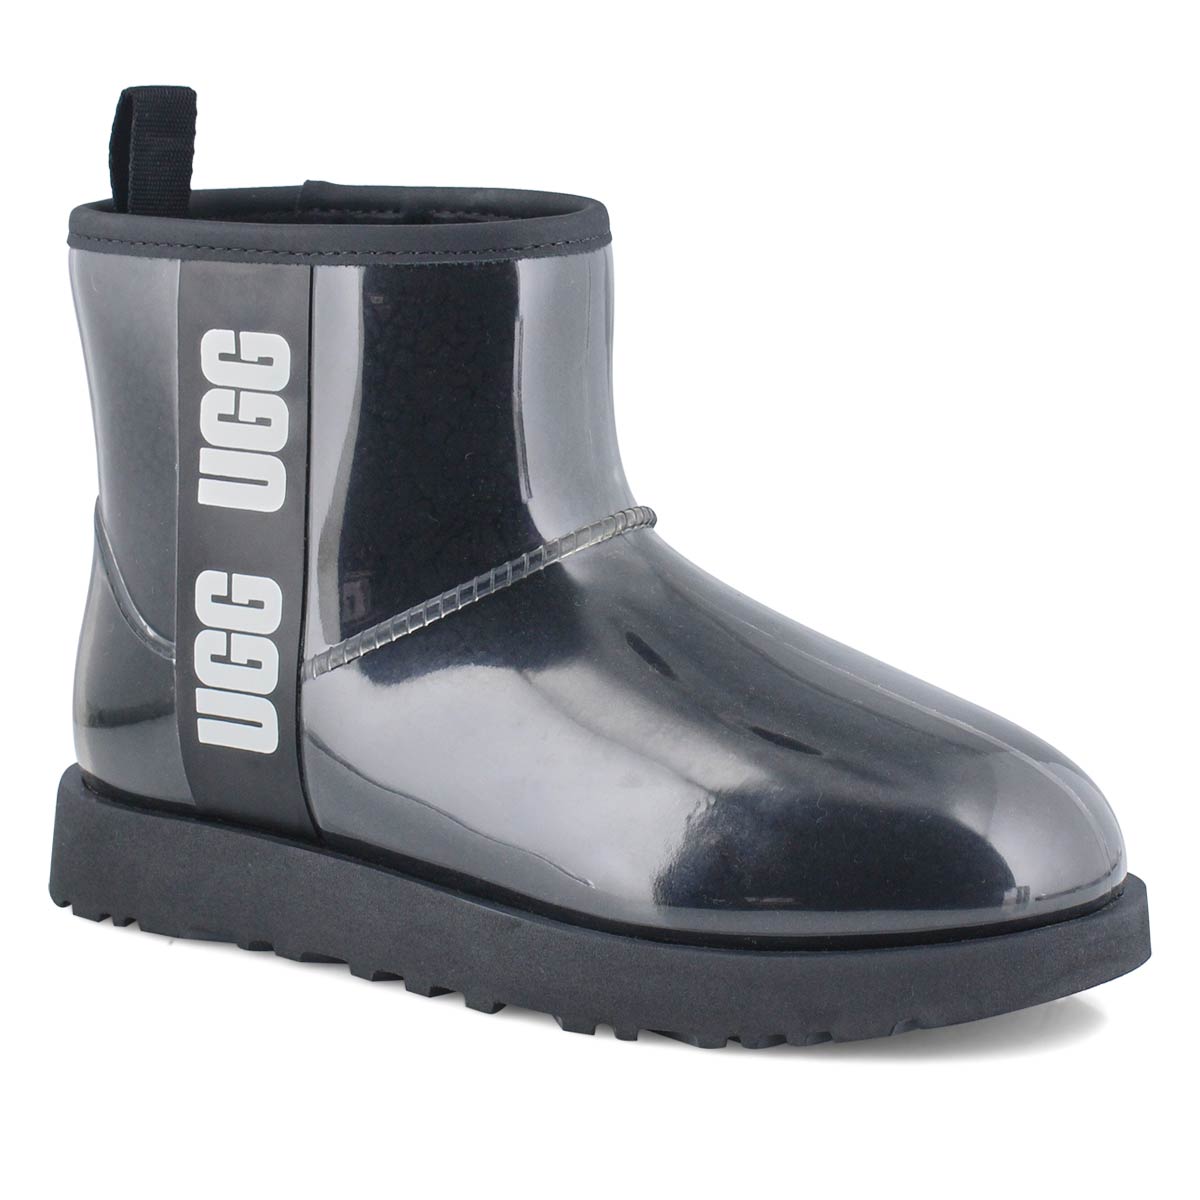 UGG Women's Classic Clear Mini Boot - Black | SoftMoc.com